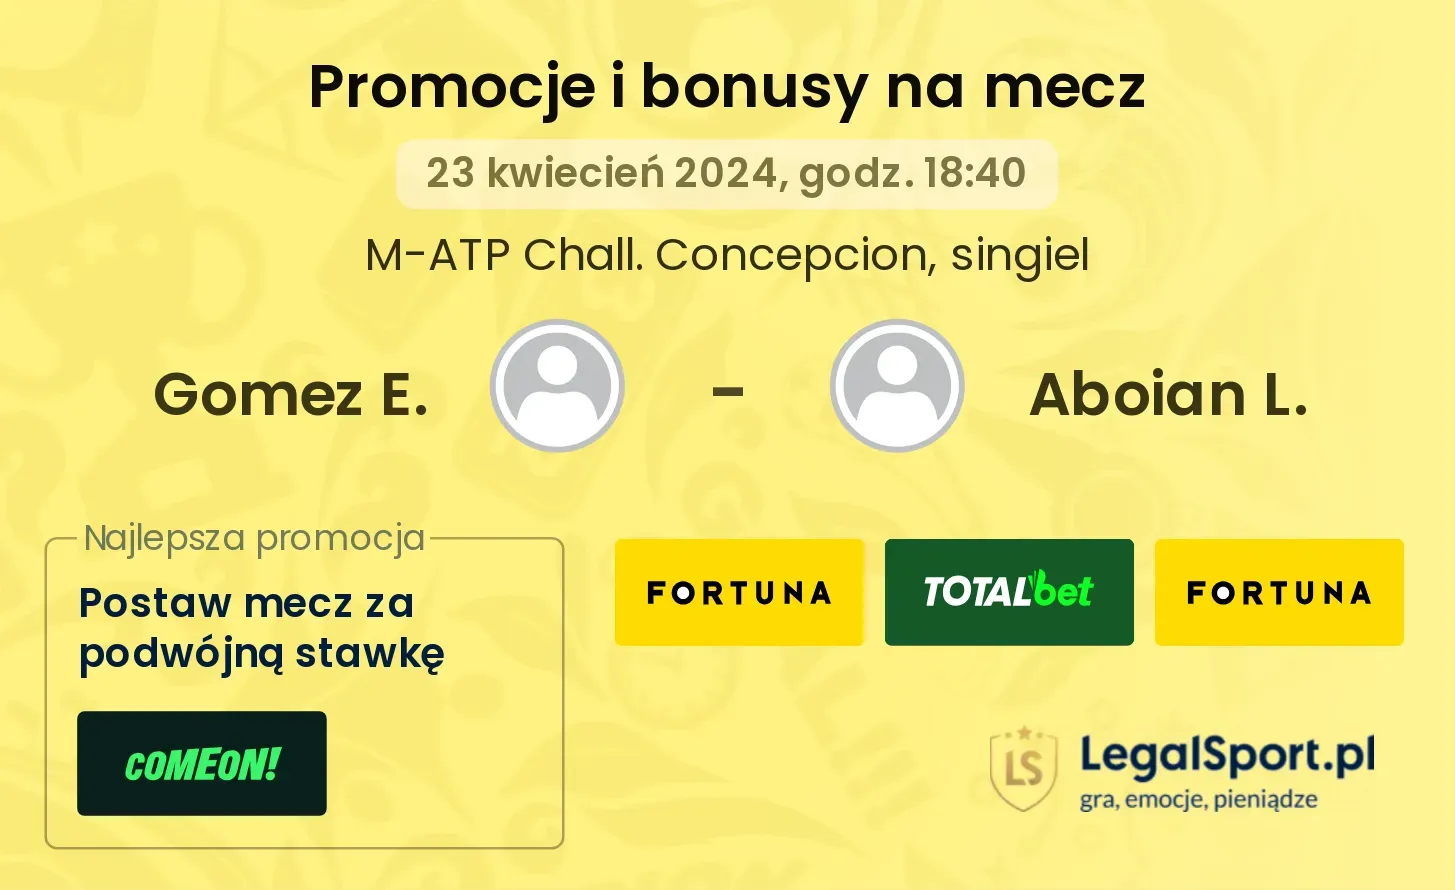 Gomez E. - Aboian L. promocje bonusy na mecz